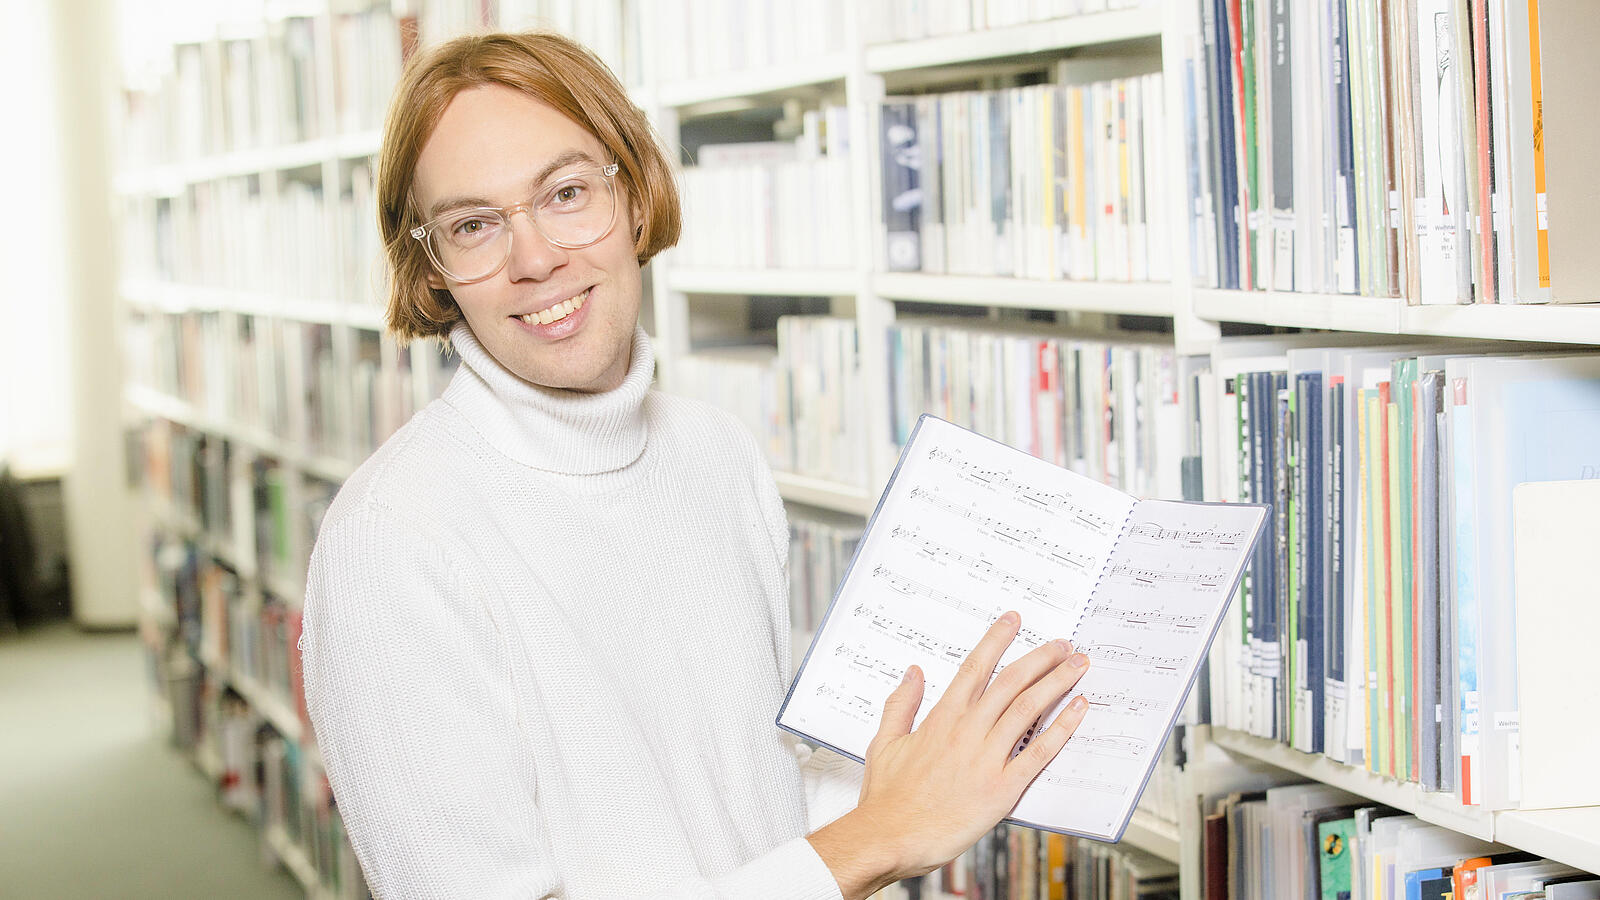 Junger Mann mit Brille steht in der Musikbibliothek vorm Regal und hält aufgeschlagenes Notenbuch in der Hand